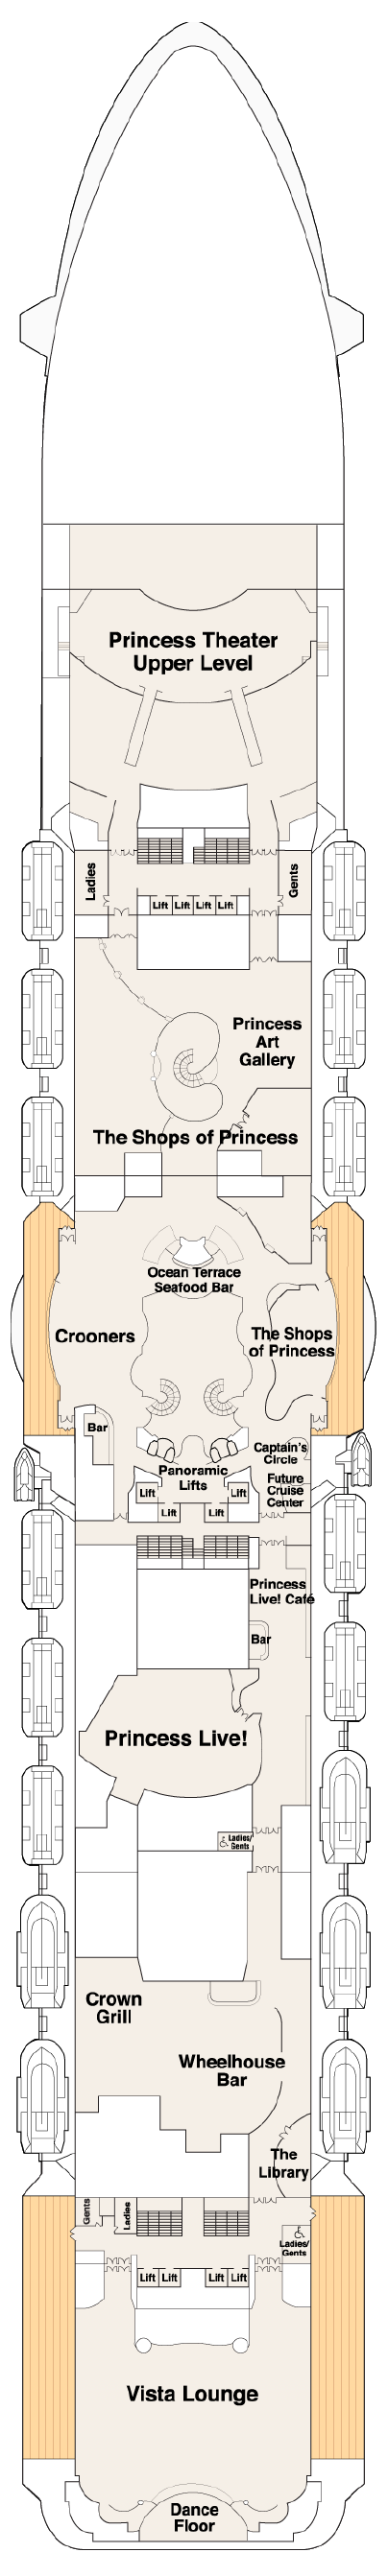 royal princess cruise ship layout